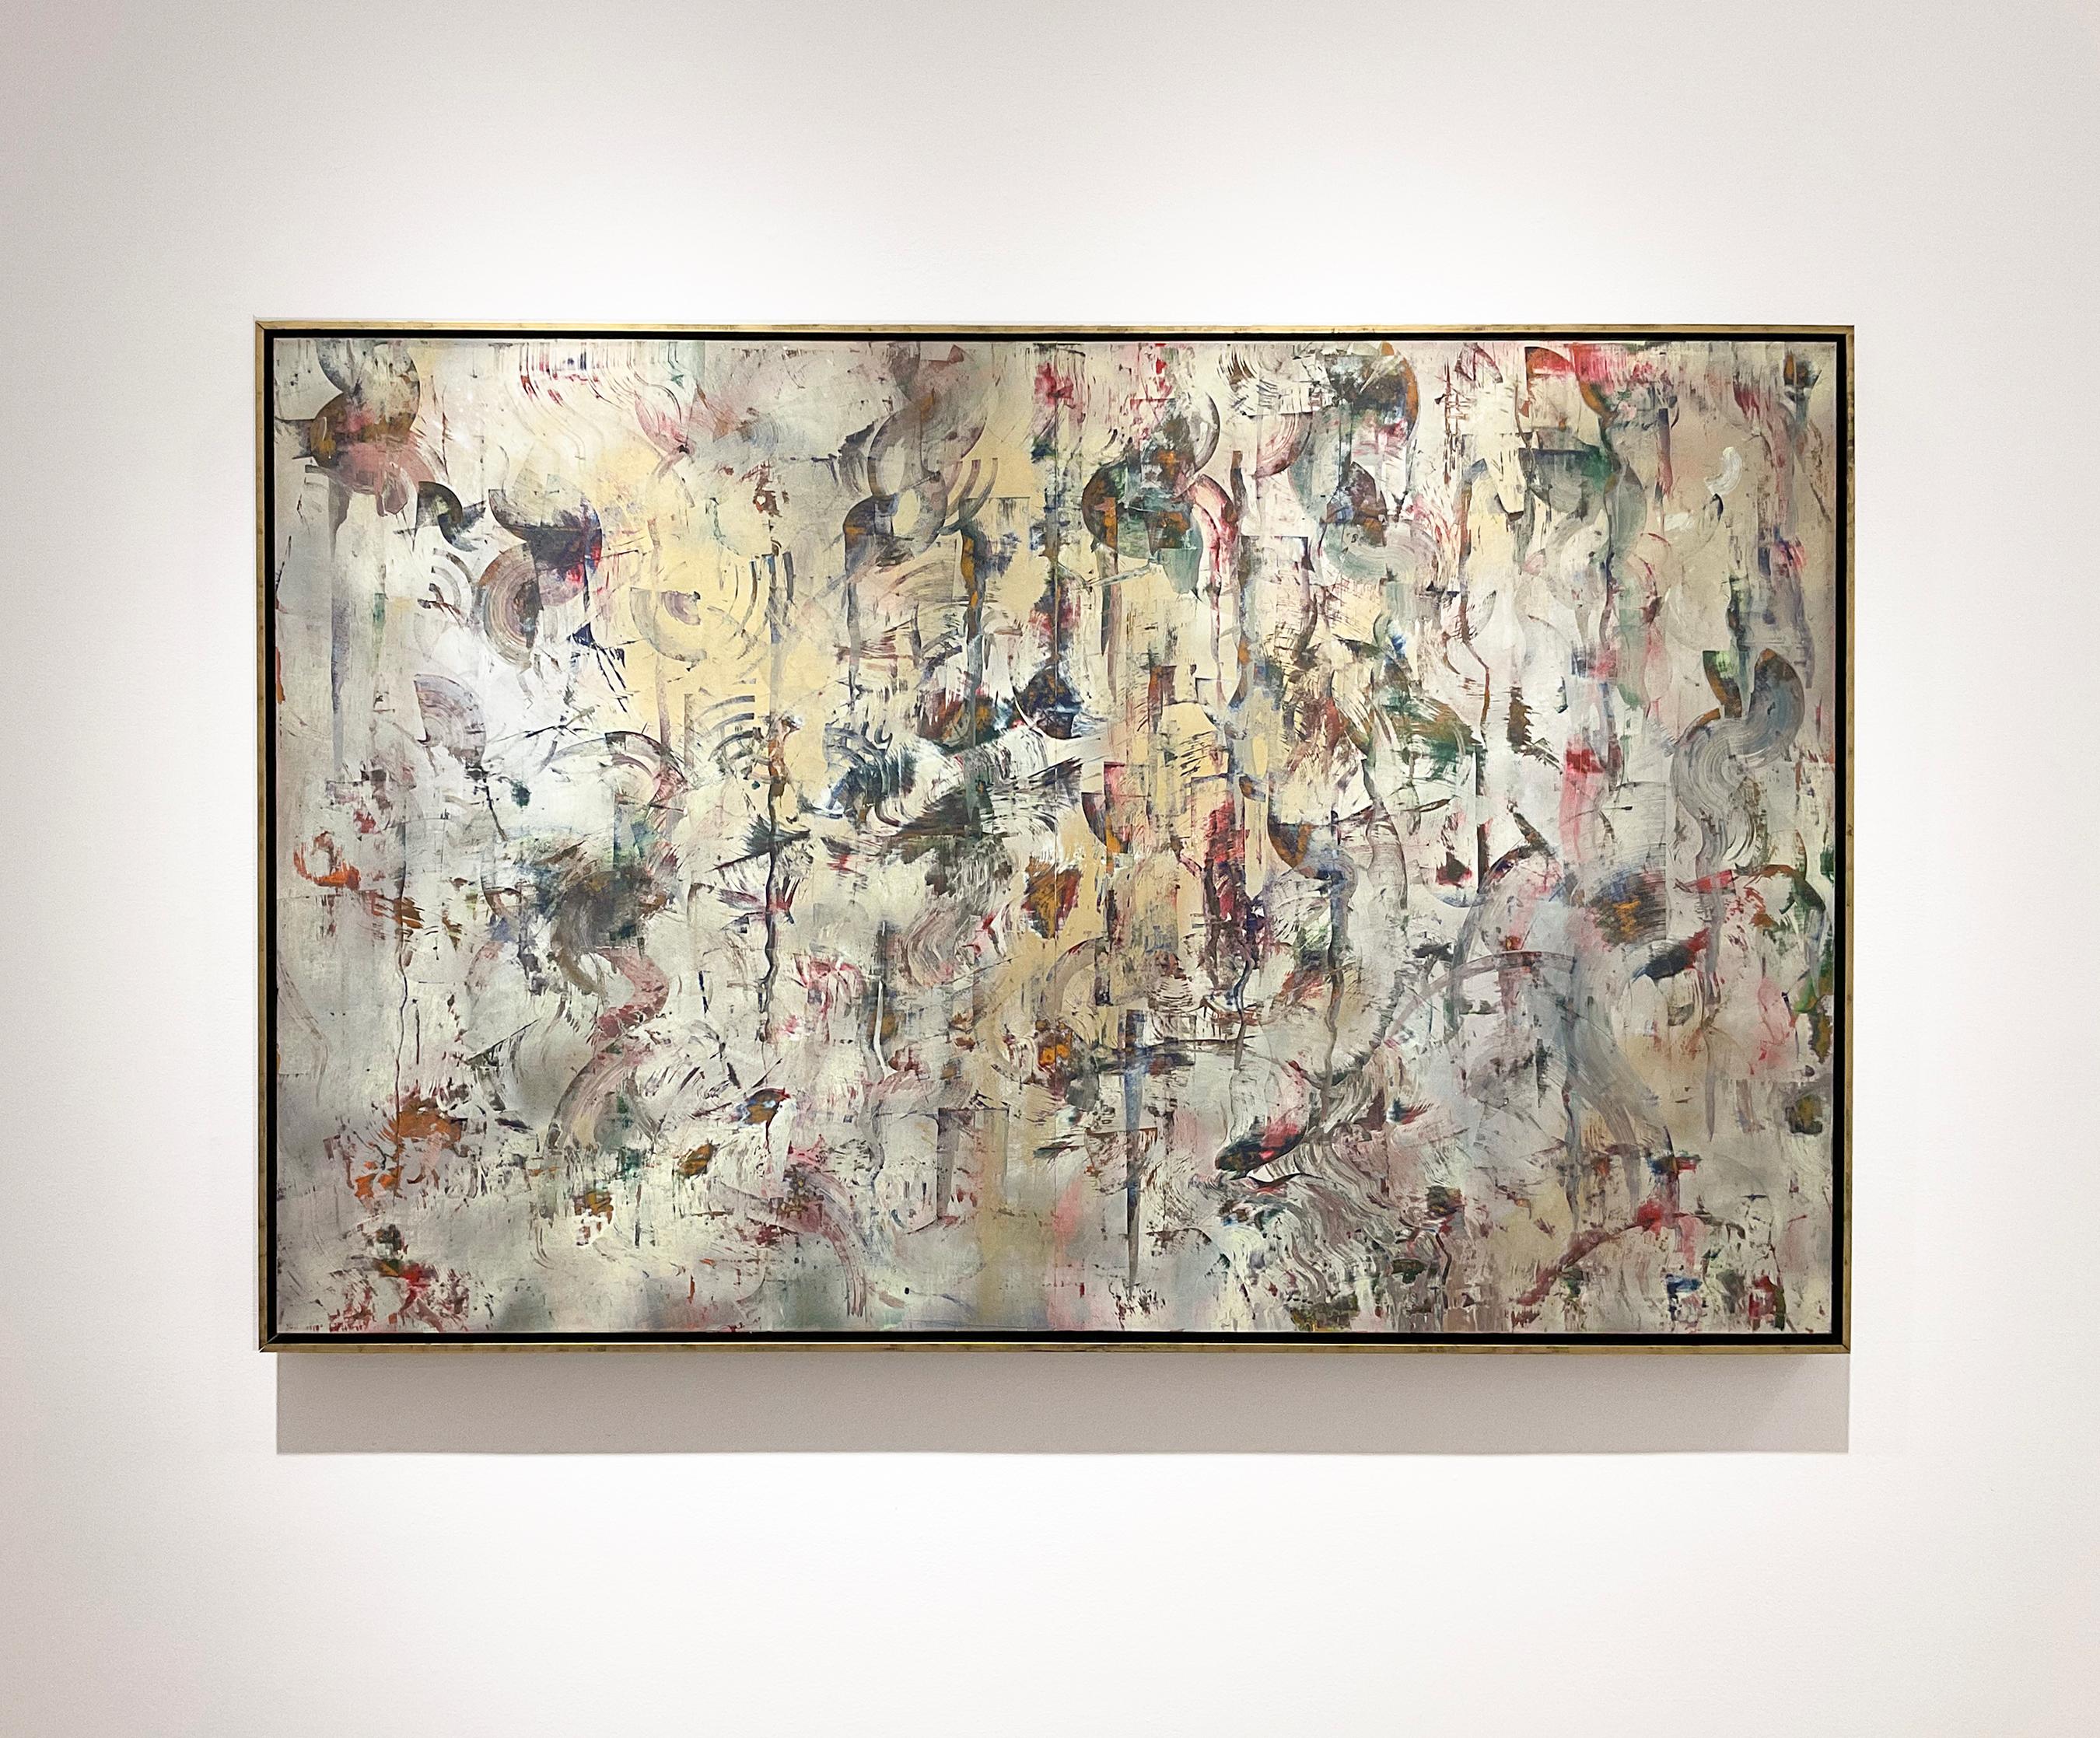 Le rythme des opposés : peinture expressionniste abstraite de Gerhard Richter - Painting de Bruce Murphy